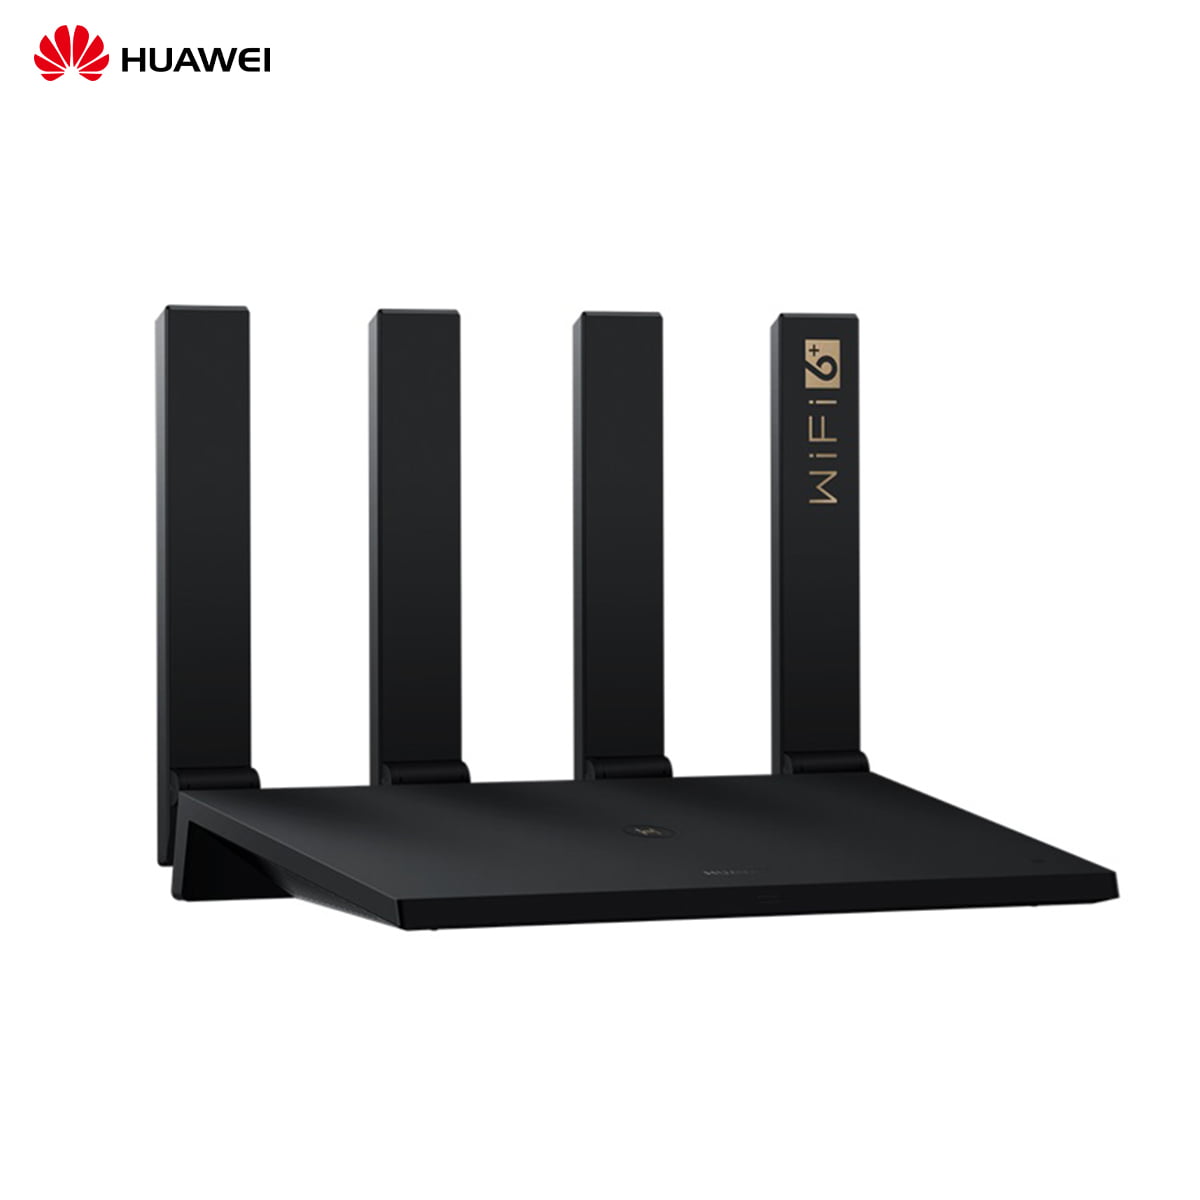 Huawei wifi ax3 pro